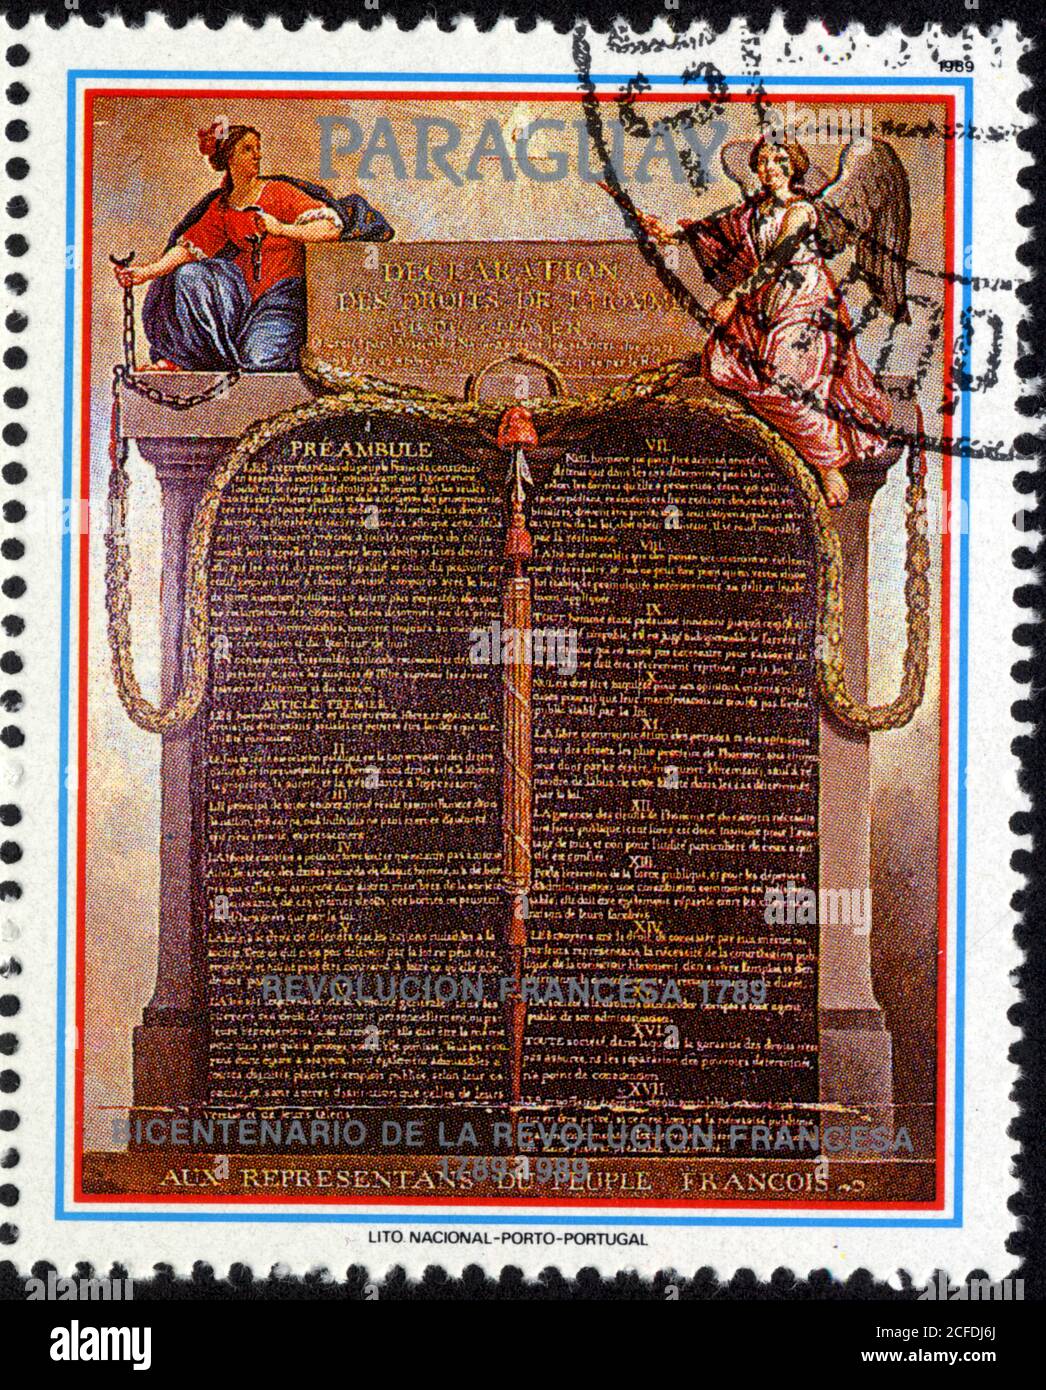 Timbre Revolución Francesa 1789. Bicentenario de la Revolución Francesa. Paraguay Foto de stock